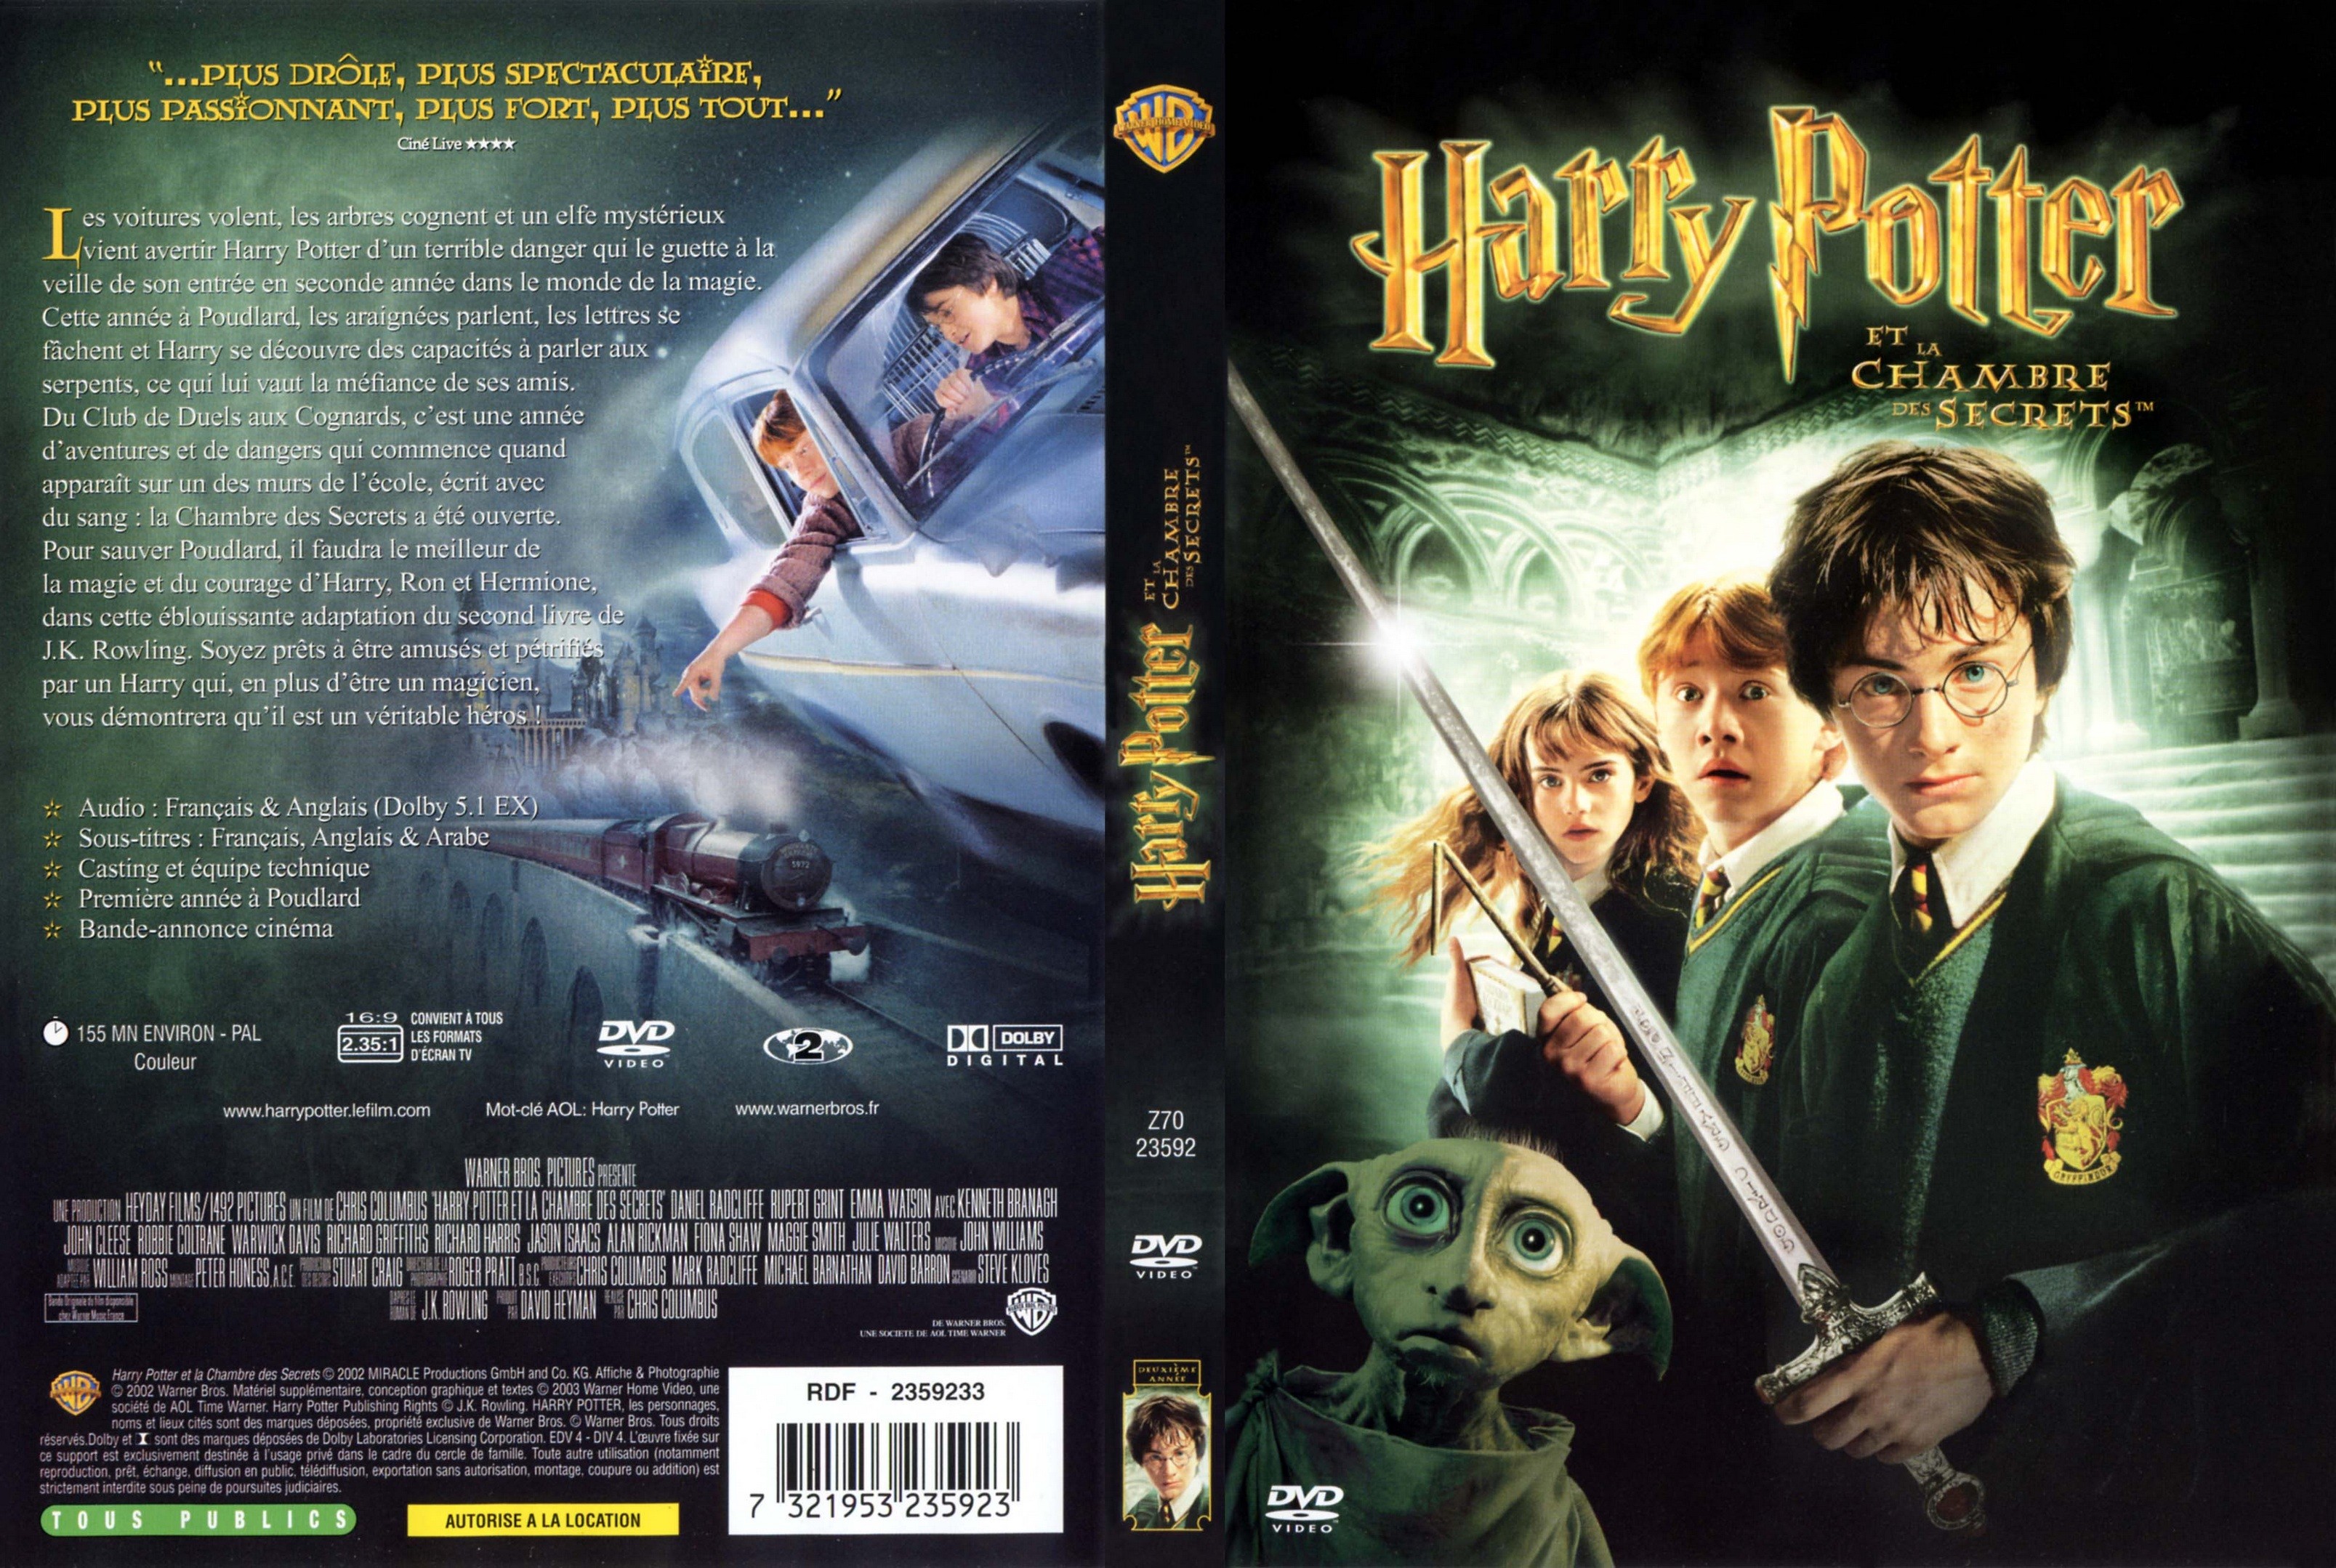 Jaquette DVD Harry Potter et la chambre des secrets v3